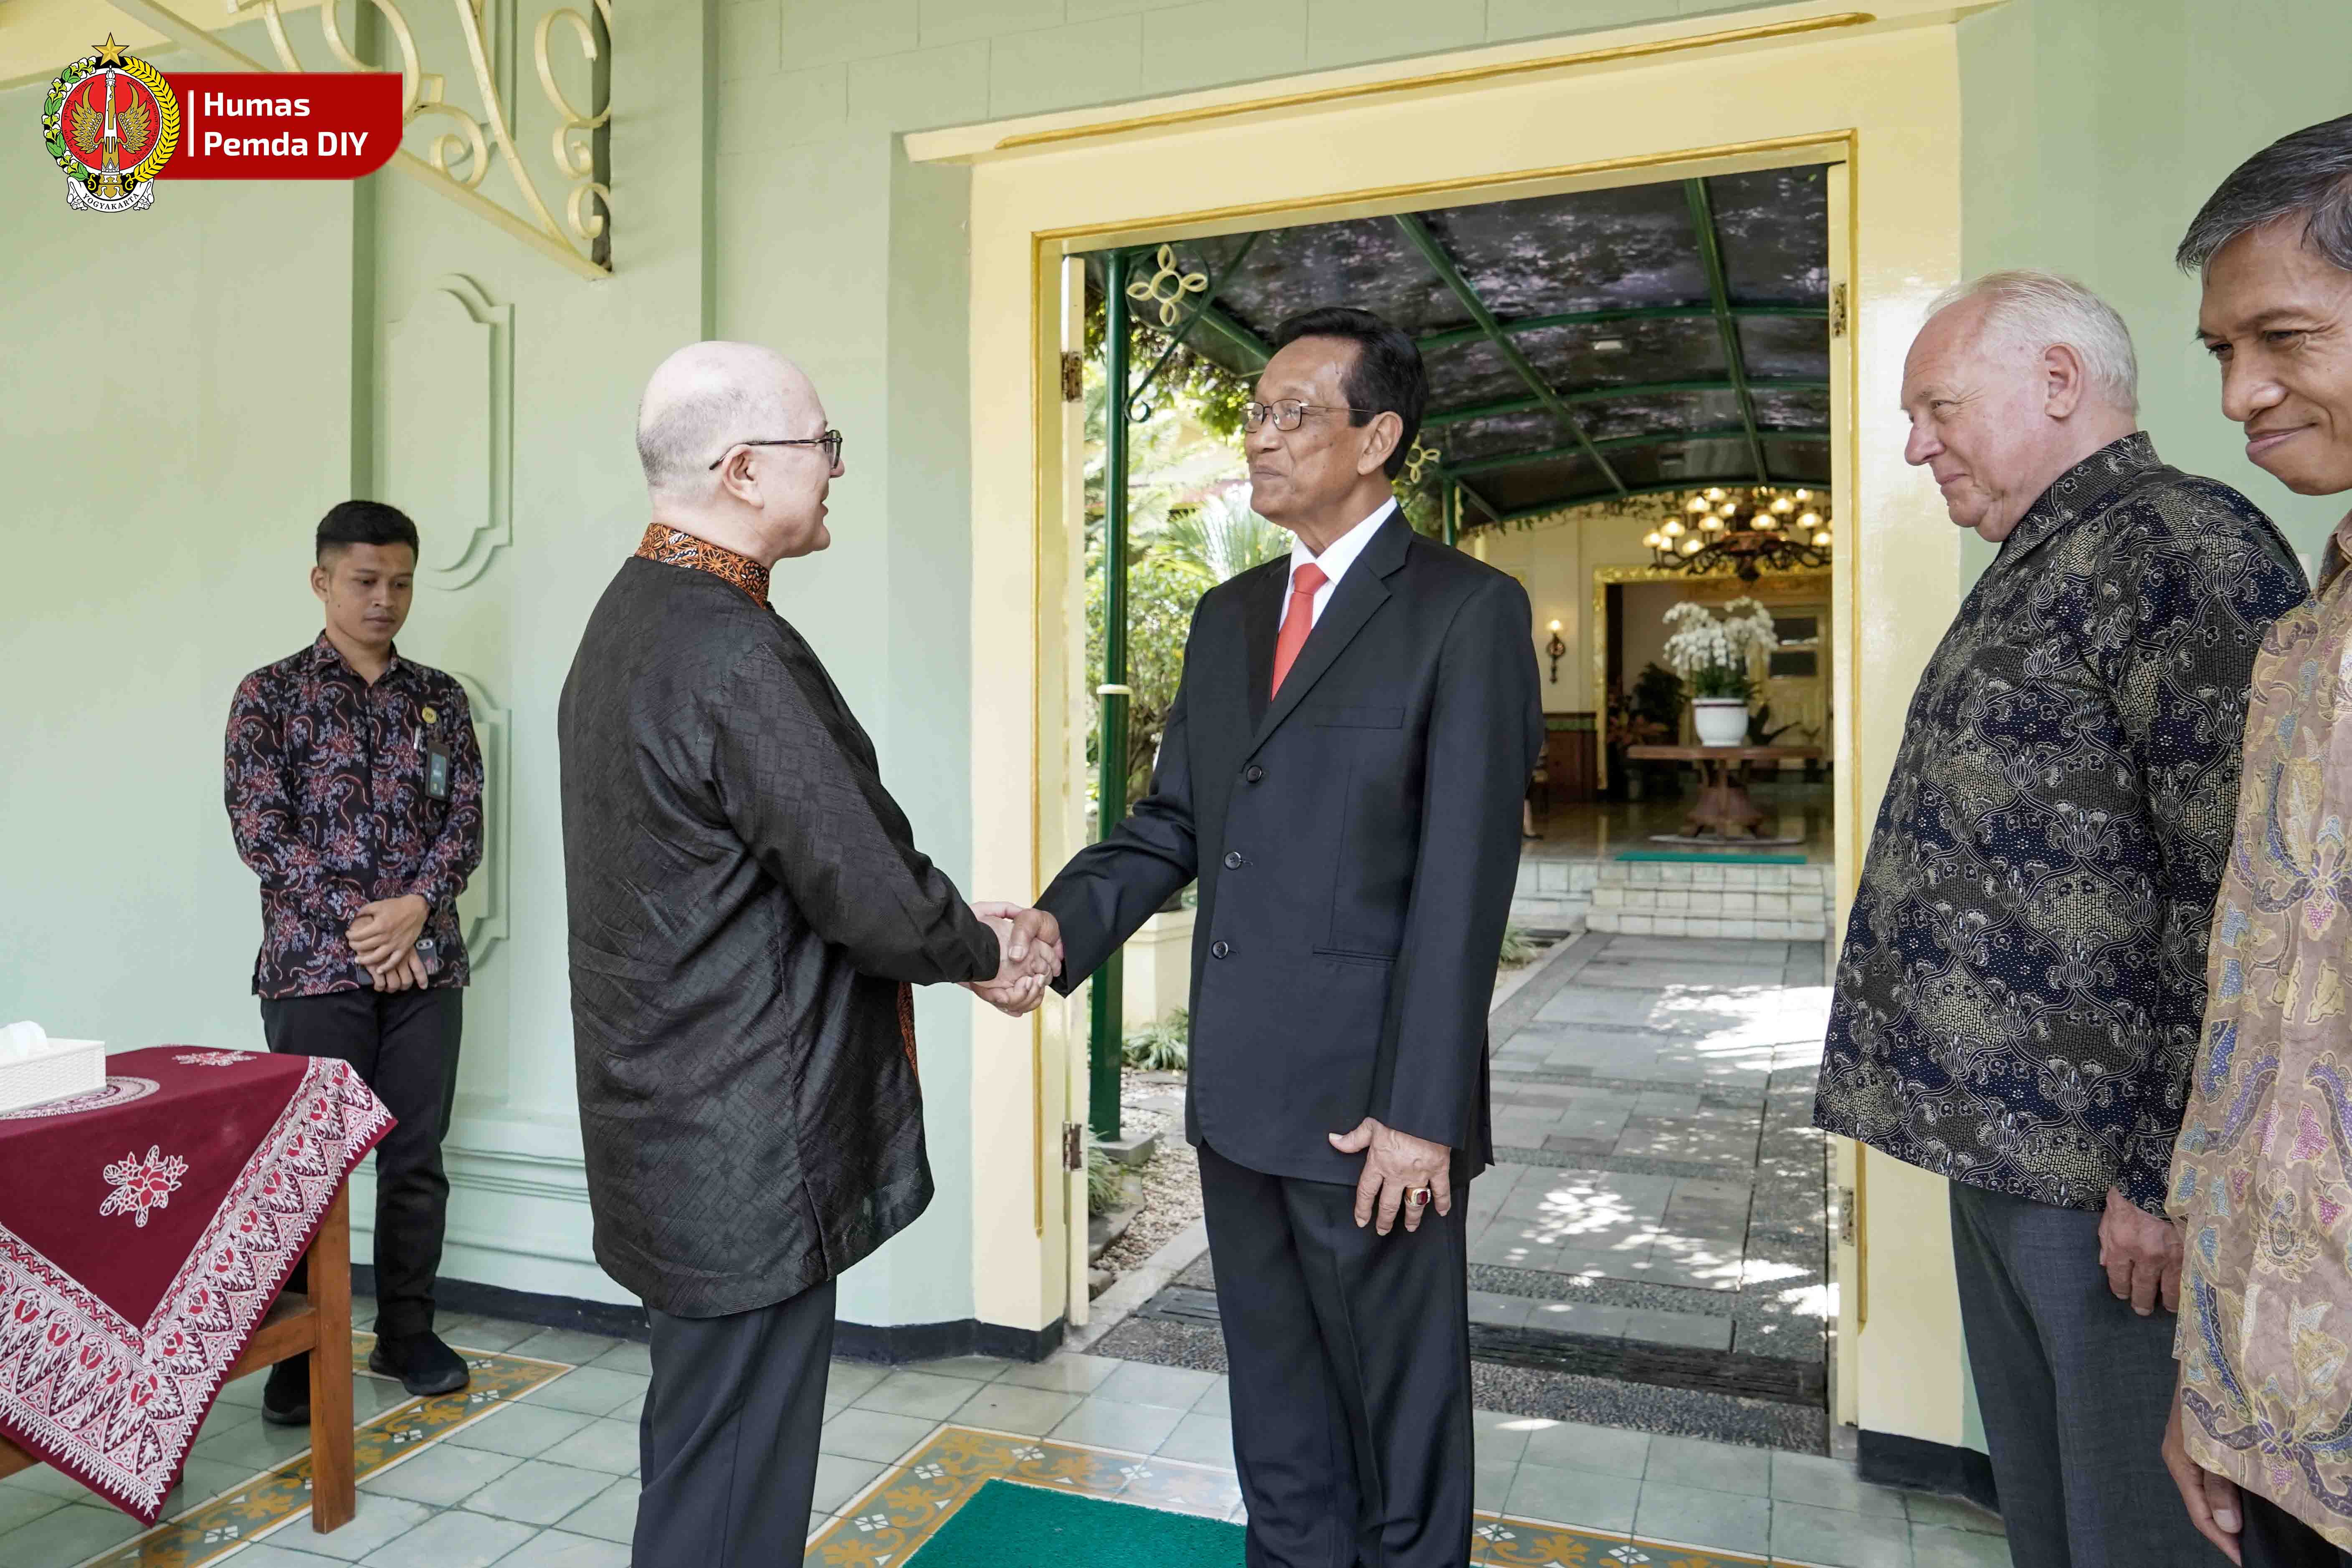  75 Tahun Kerjasama Belgia - Indonesia, Diplomatik Menjadi Friendship